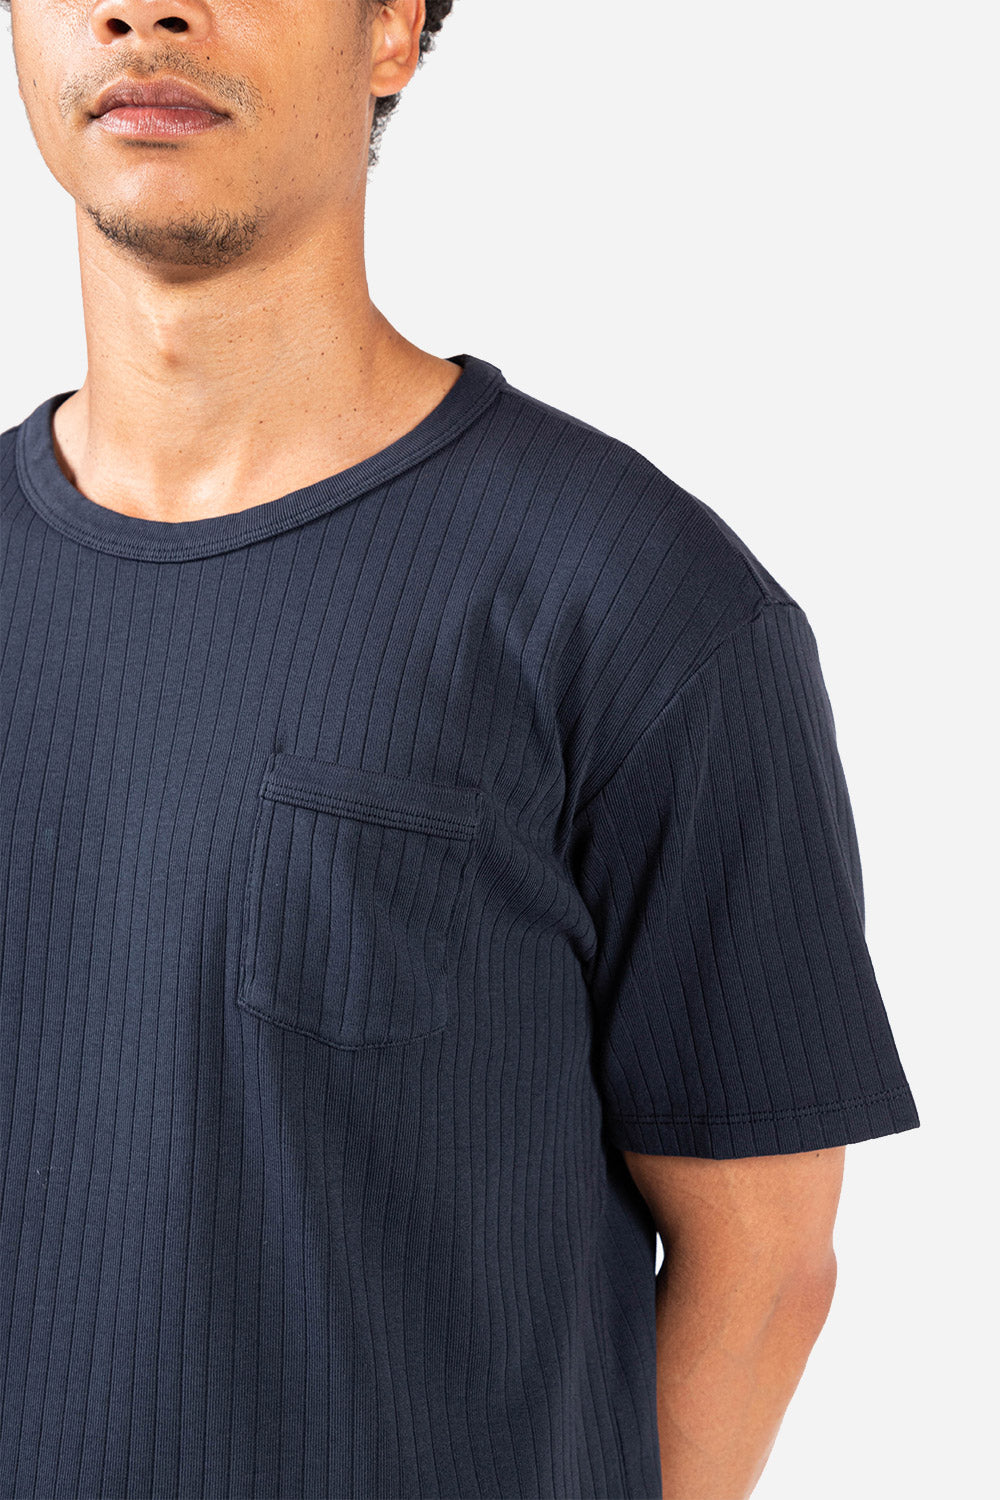 Rib Pocket T-shirt | Navy | Knickerbocker